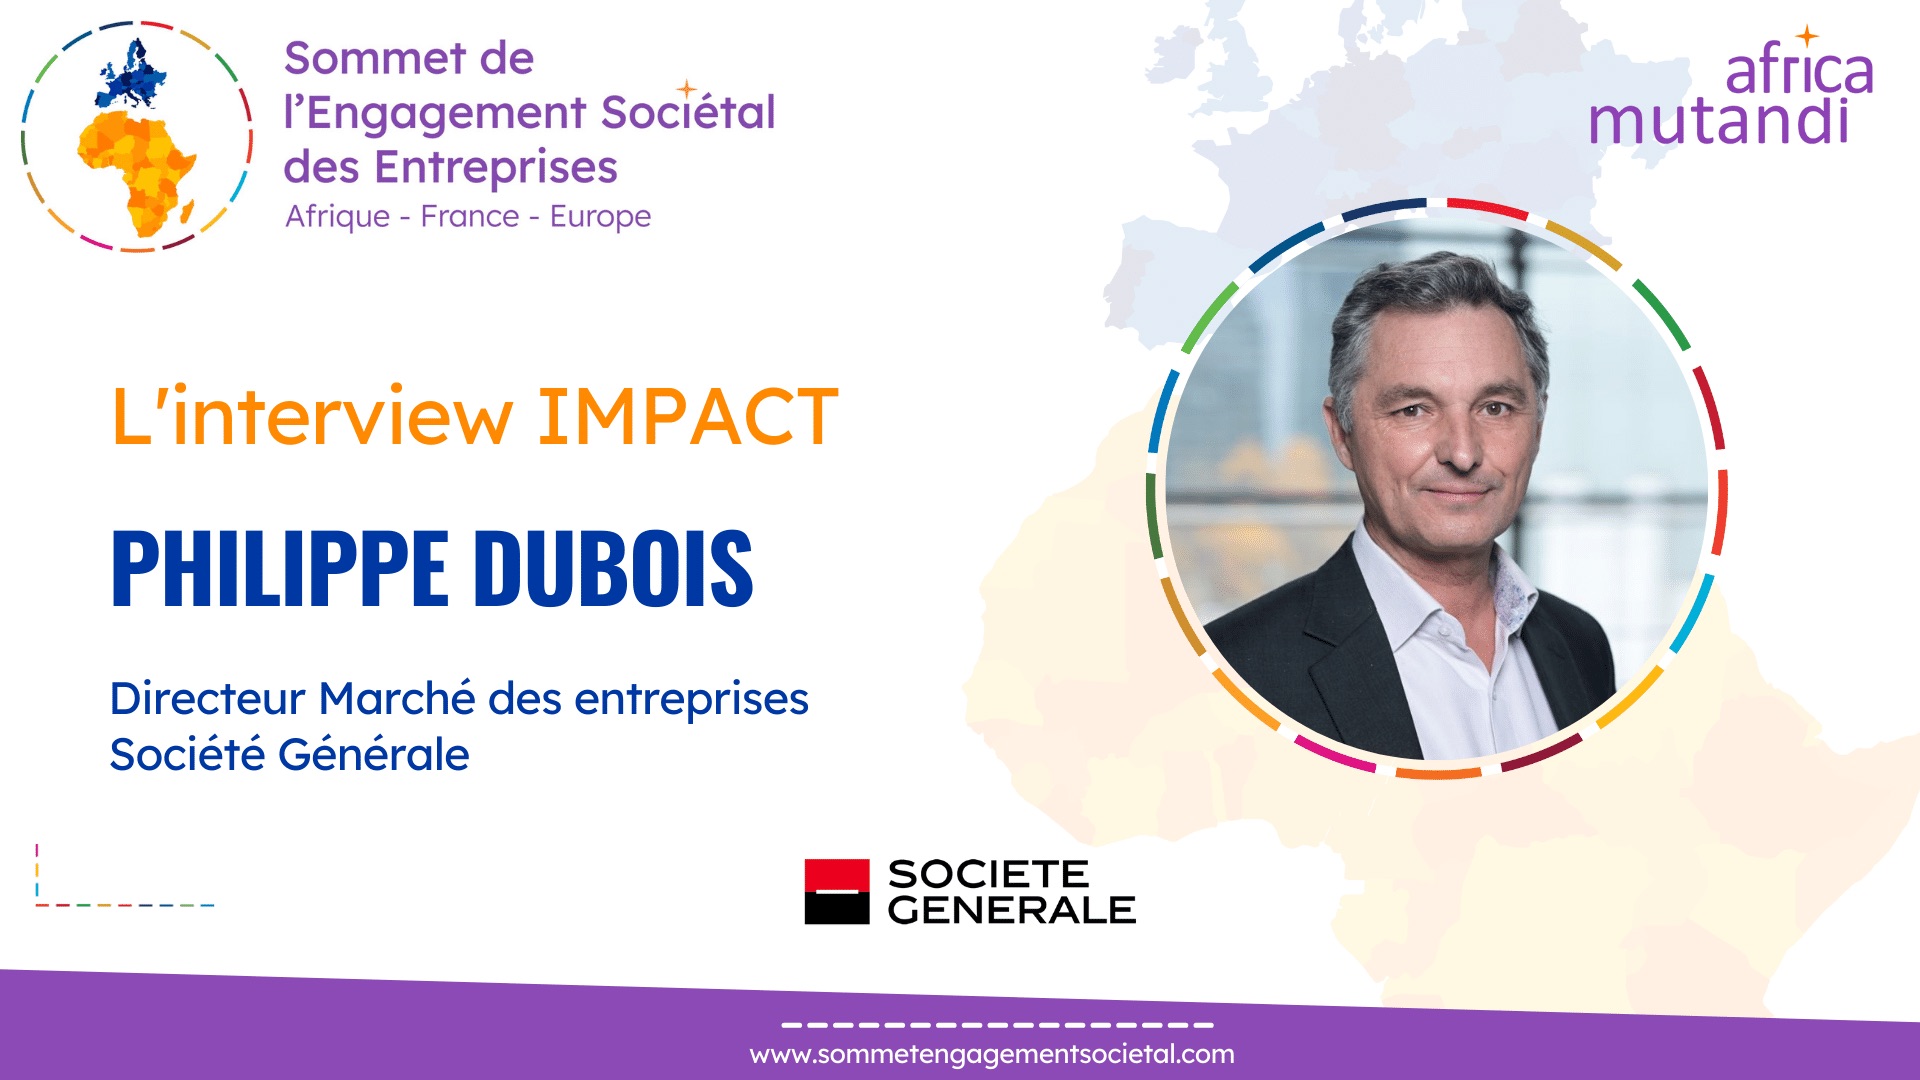 L’interview IMPACT de Philippe Dubois, Directeur Marché des Entreprises de la Société Générale